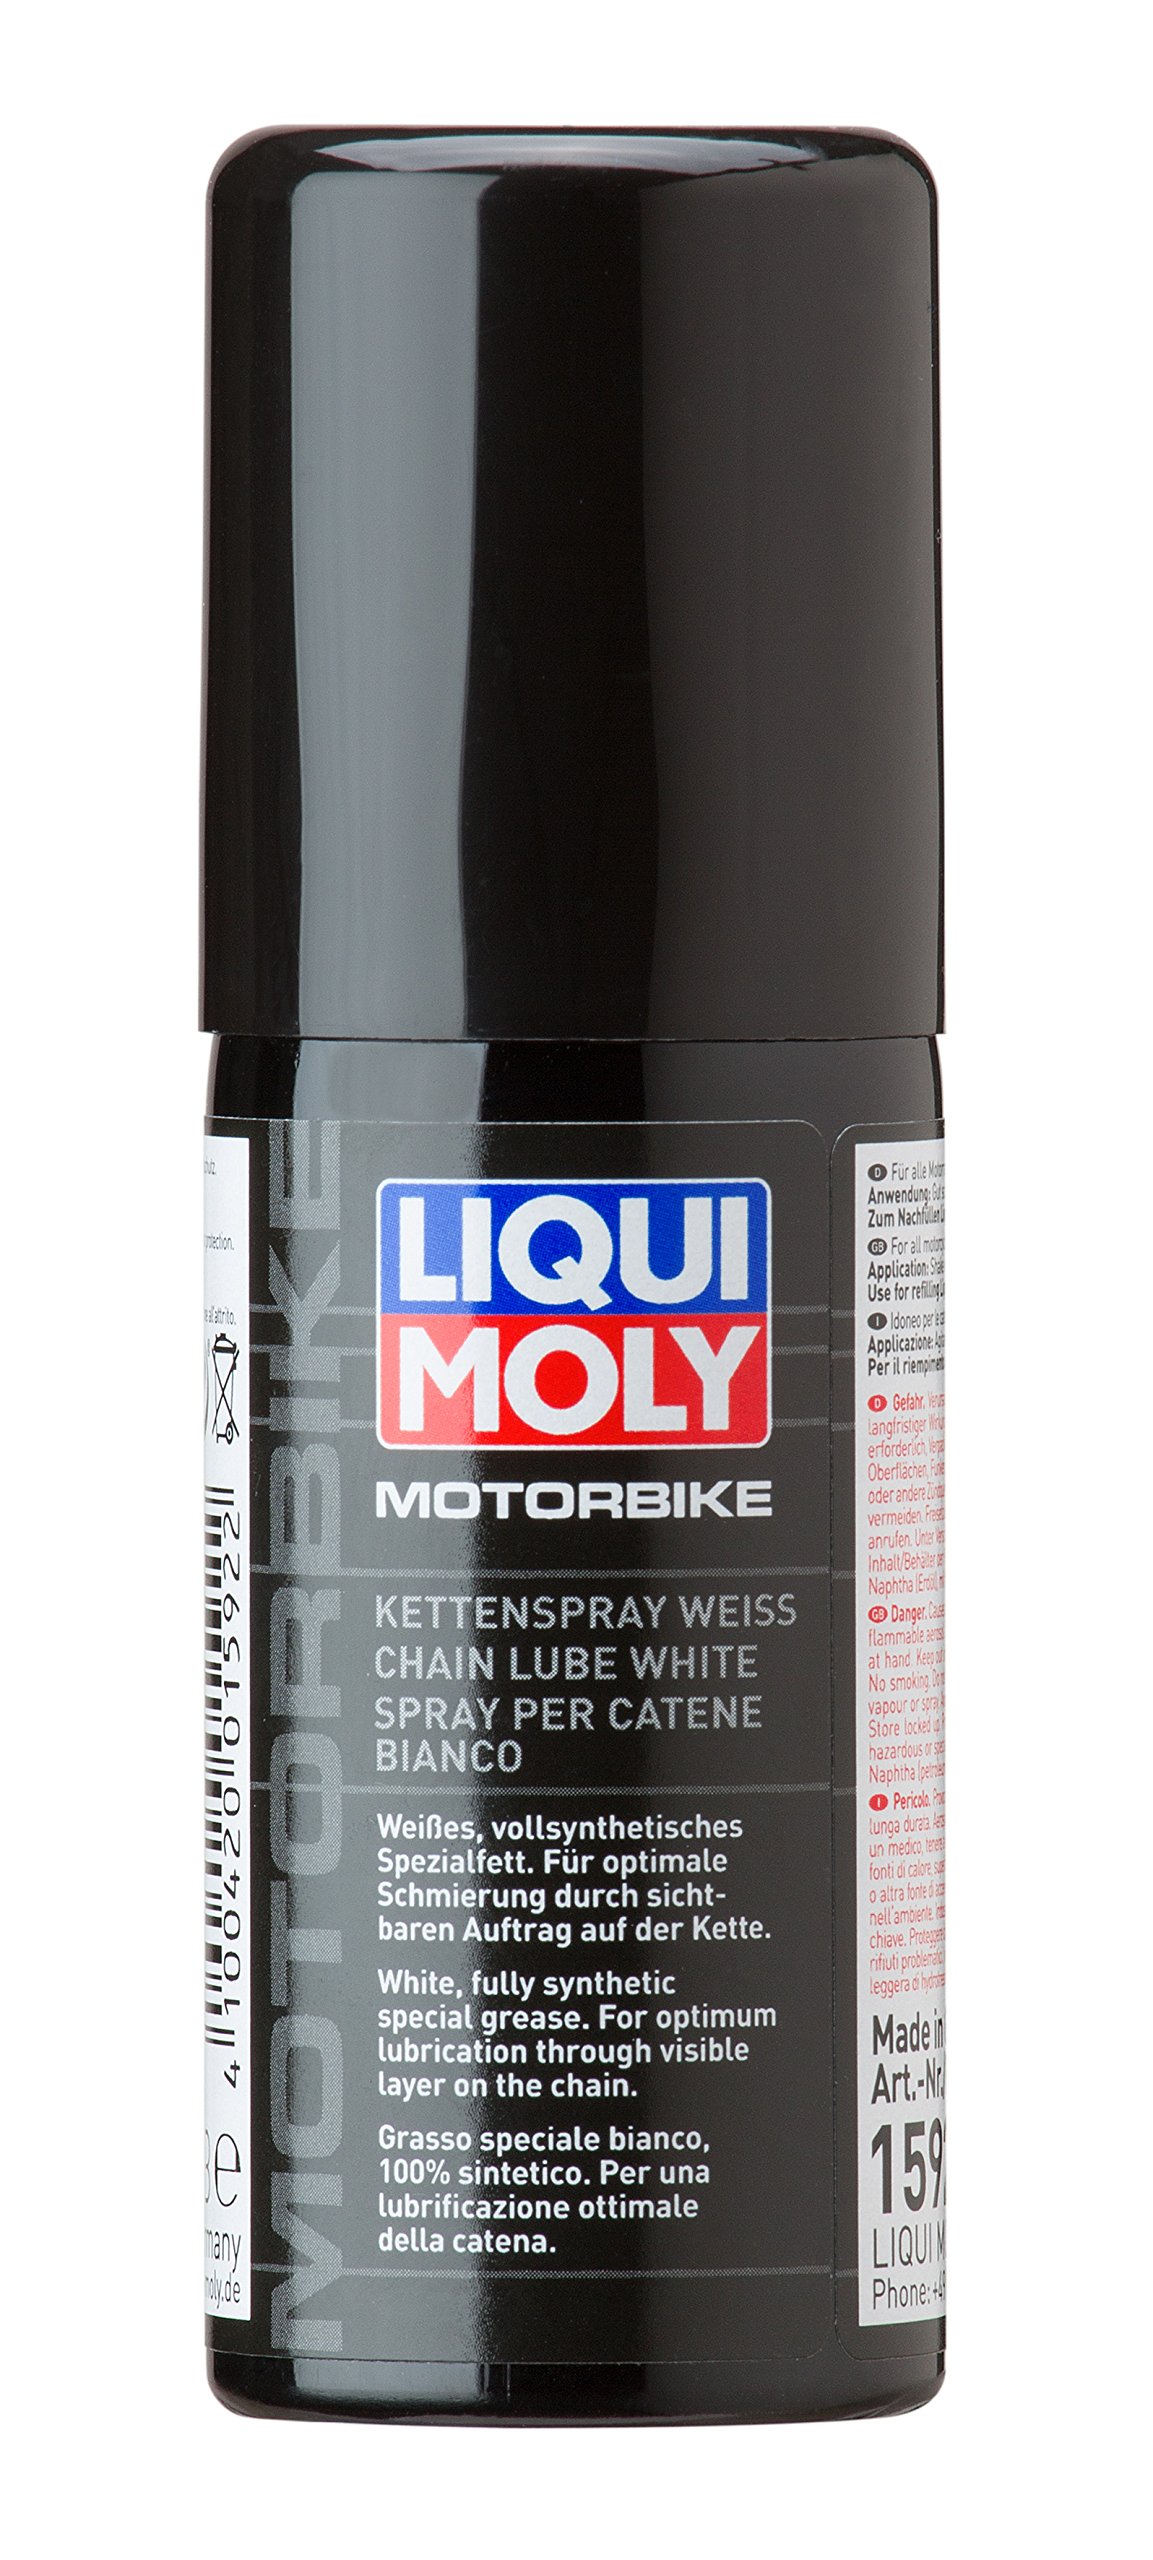 LIQUI MOLY Motorbike Kettenspray weiß | 50 ml | Motorrad Haftschmierstoff ohne Kupfer | Art.-Nr.: 1592 von Liqui Moly